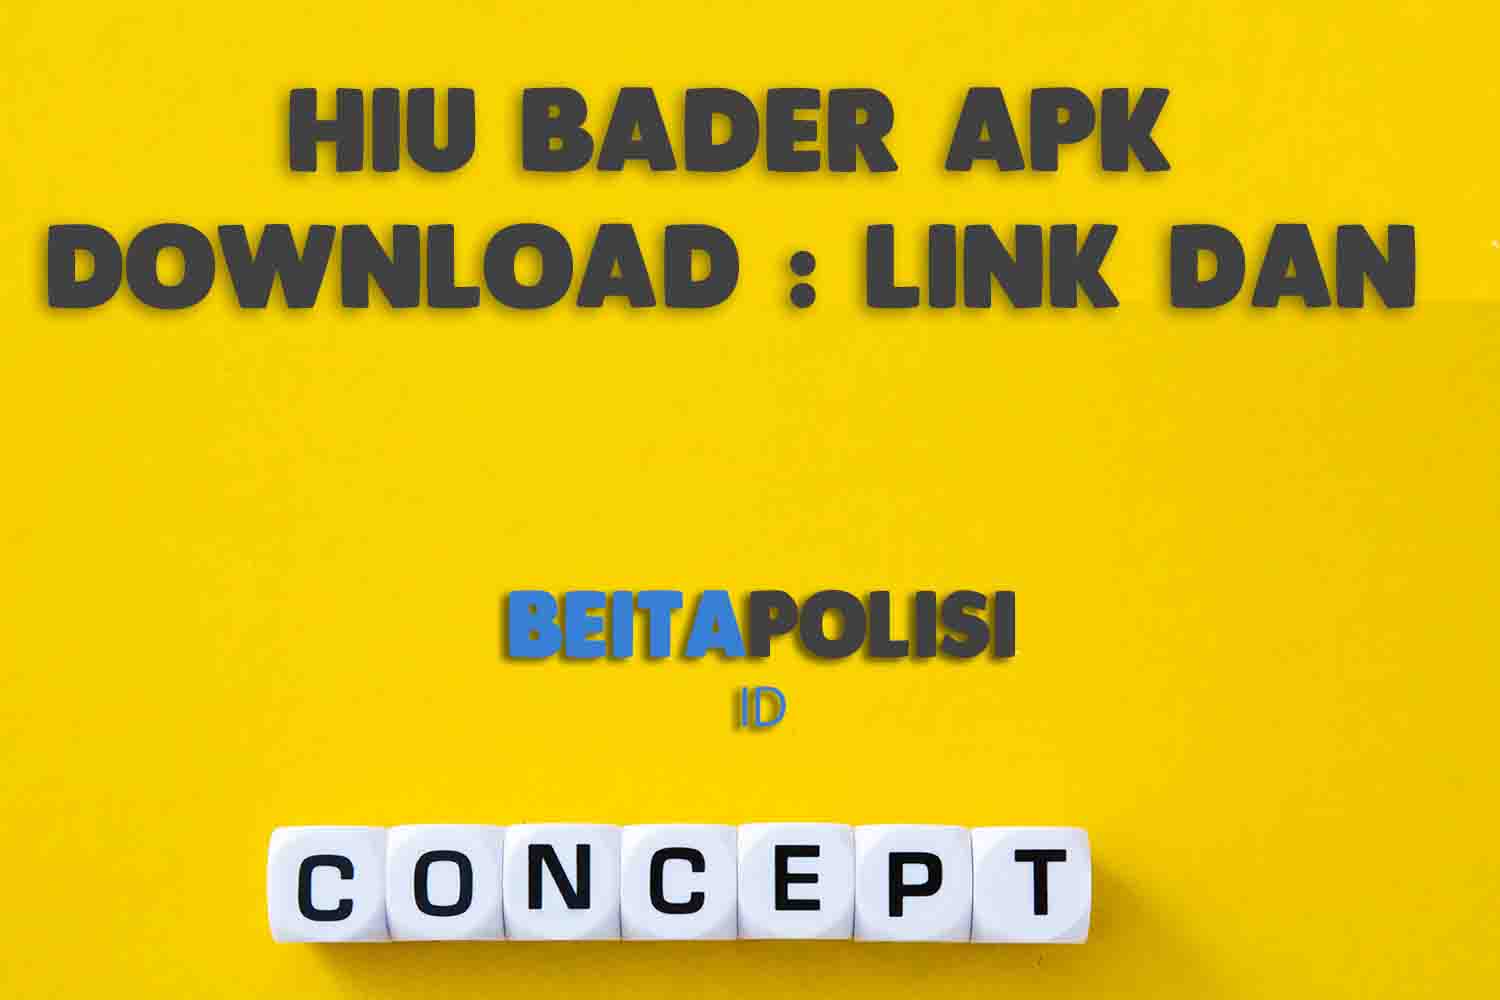 Hiu Bader Apk Download Link Dan Caranya